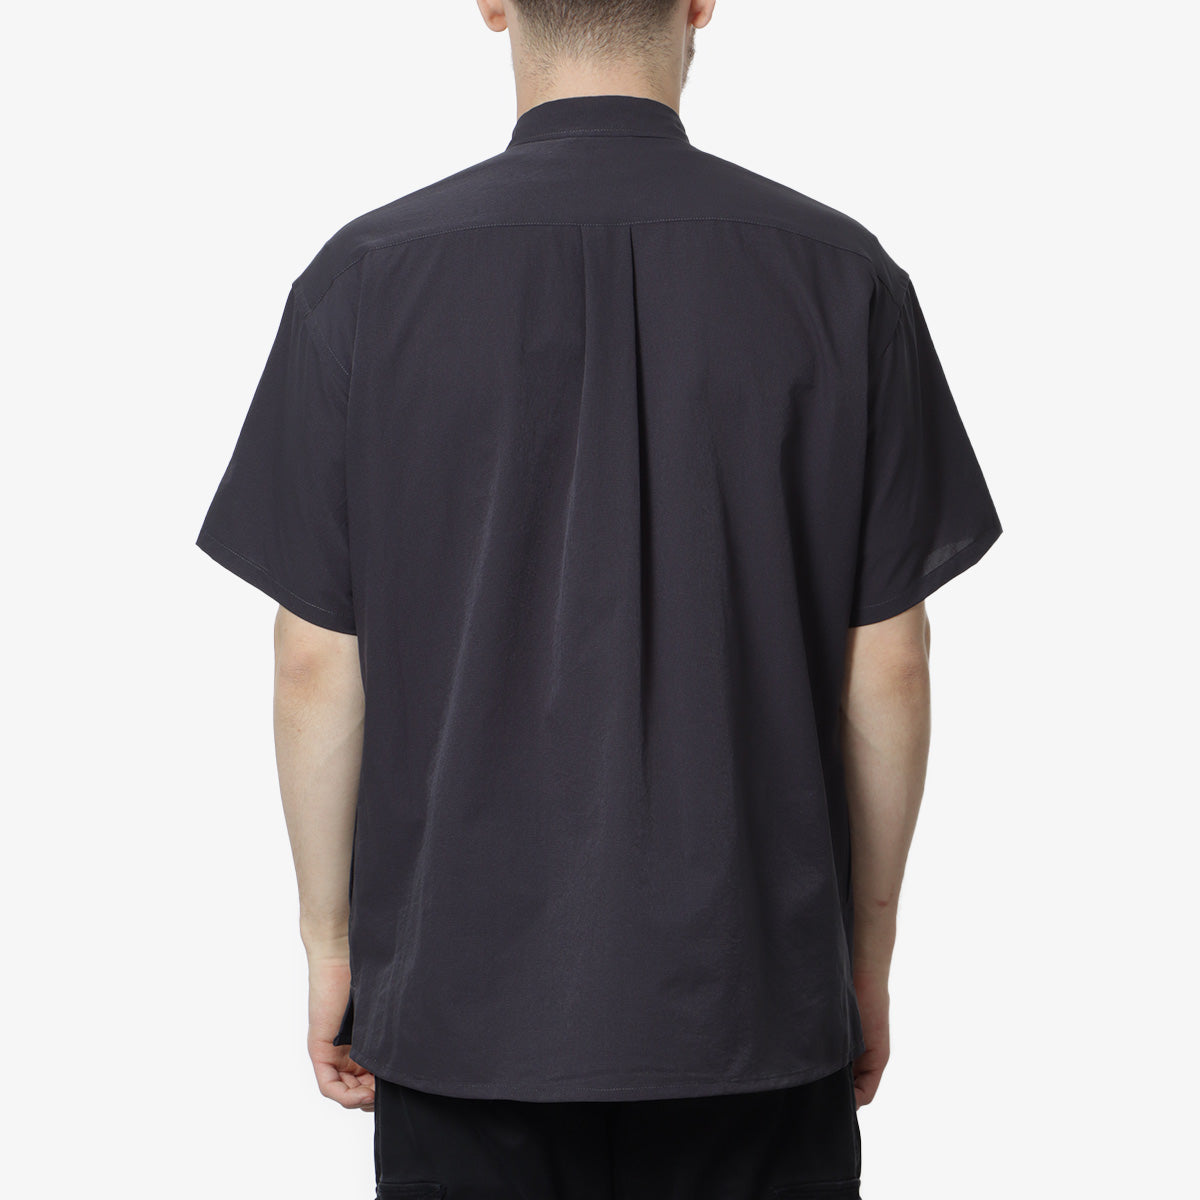 Nanga Dot Air Comfy Short Sleeve Shirt, Black, Detail Shot 4